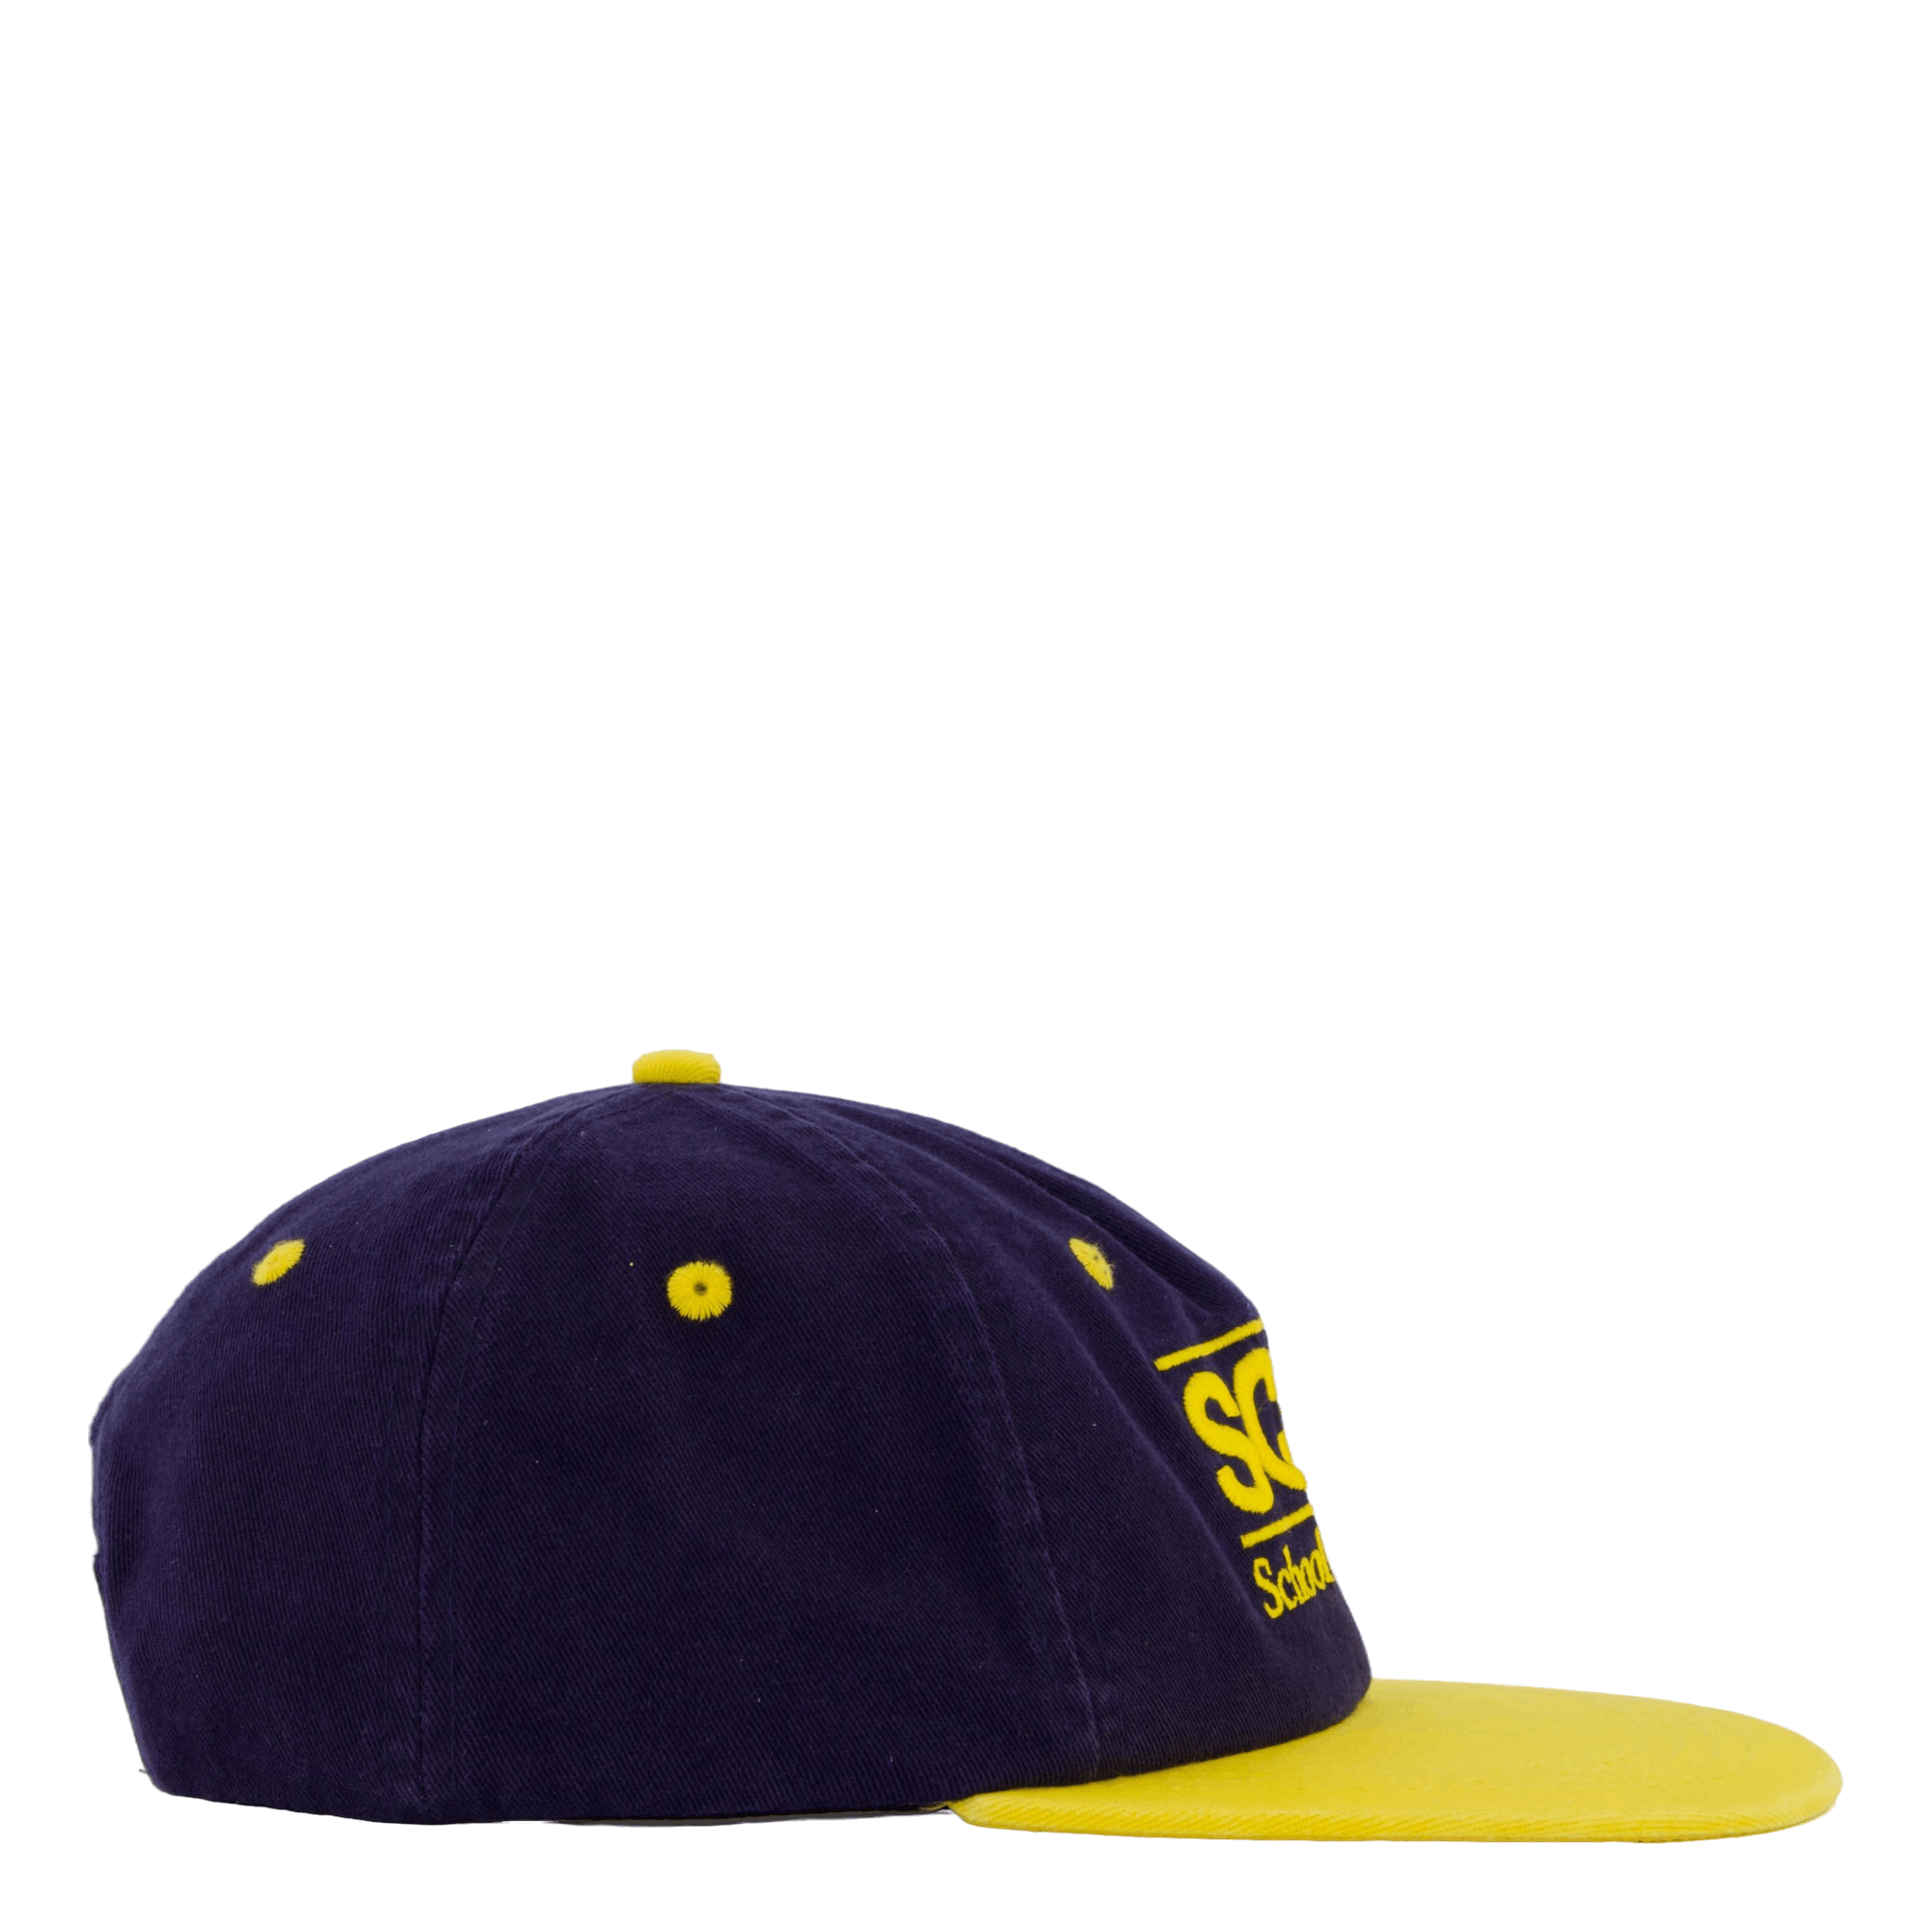 School Of Business Hat Navy/yellow